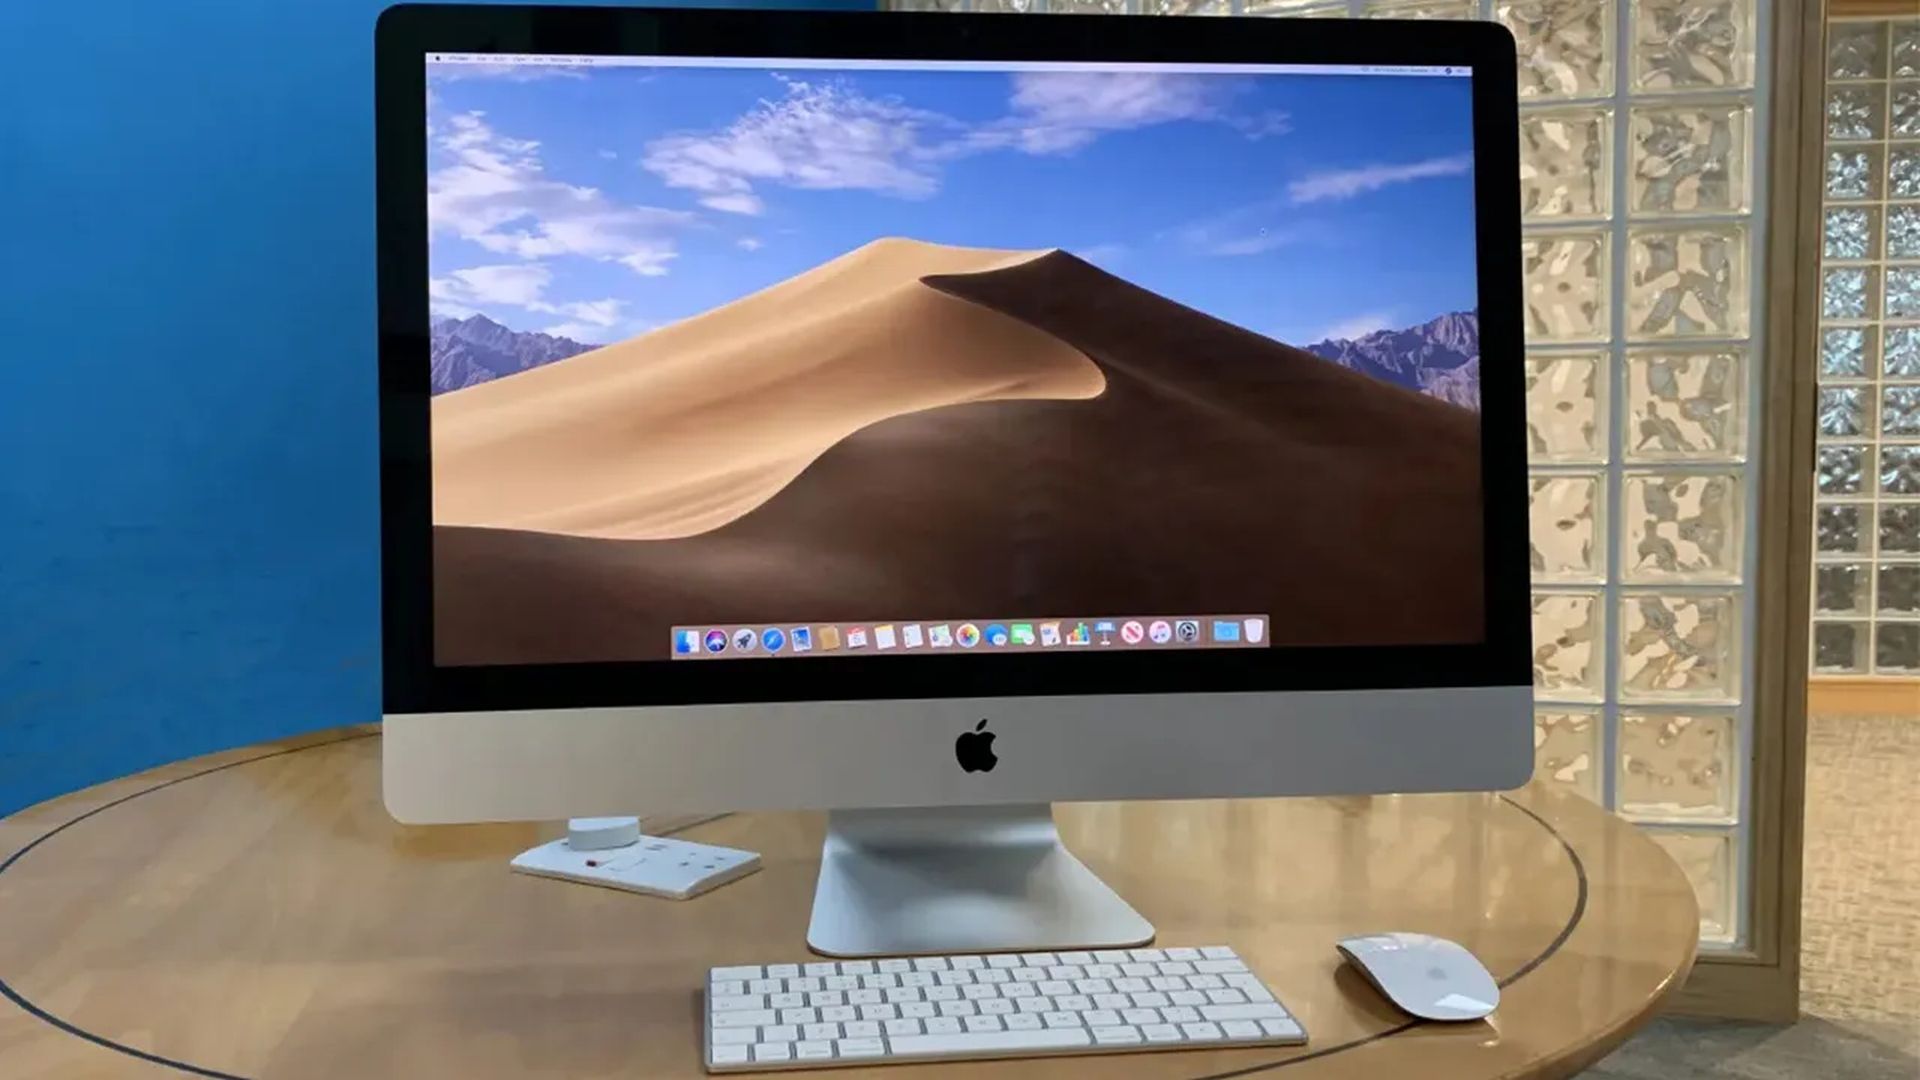 iMac 27 inç: Özellikleri, fiyatı ve çıkış tarihi